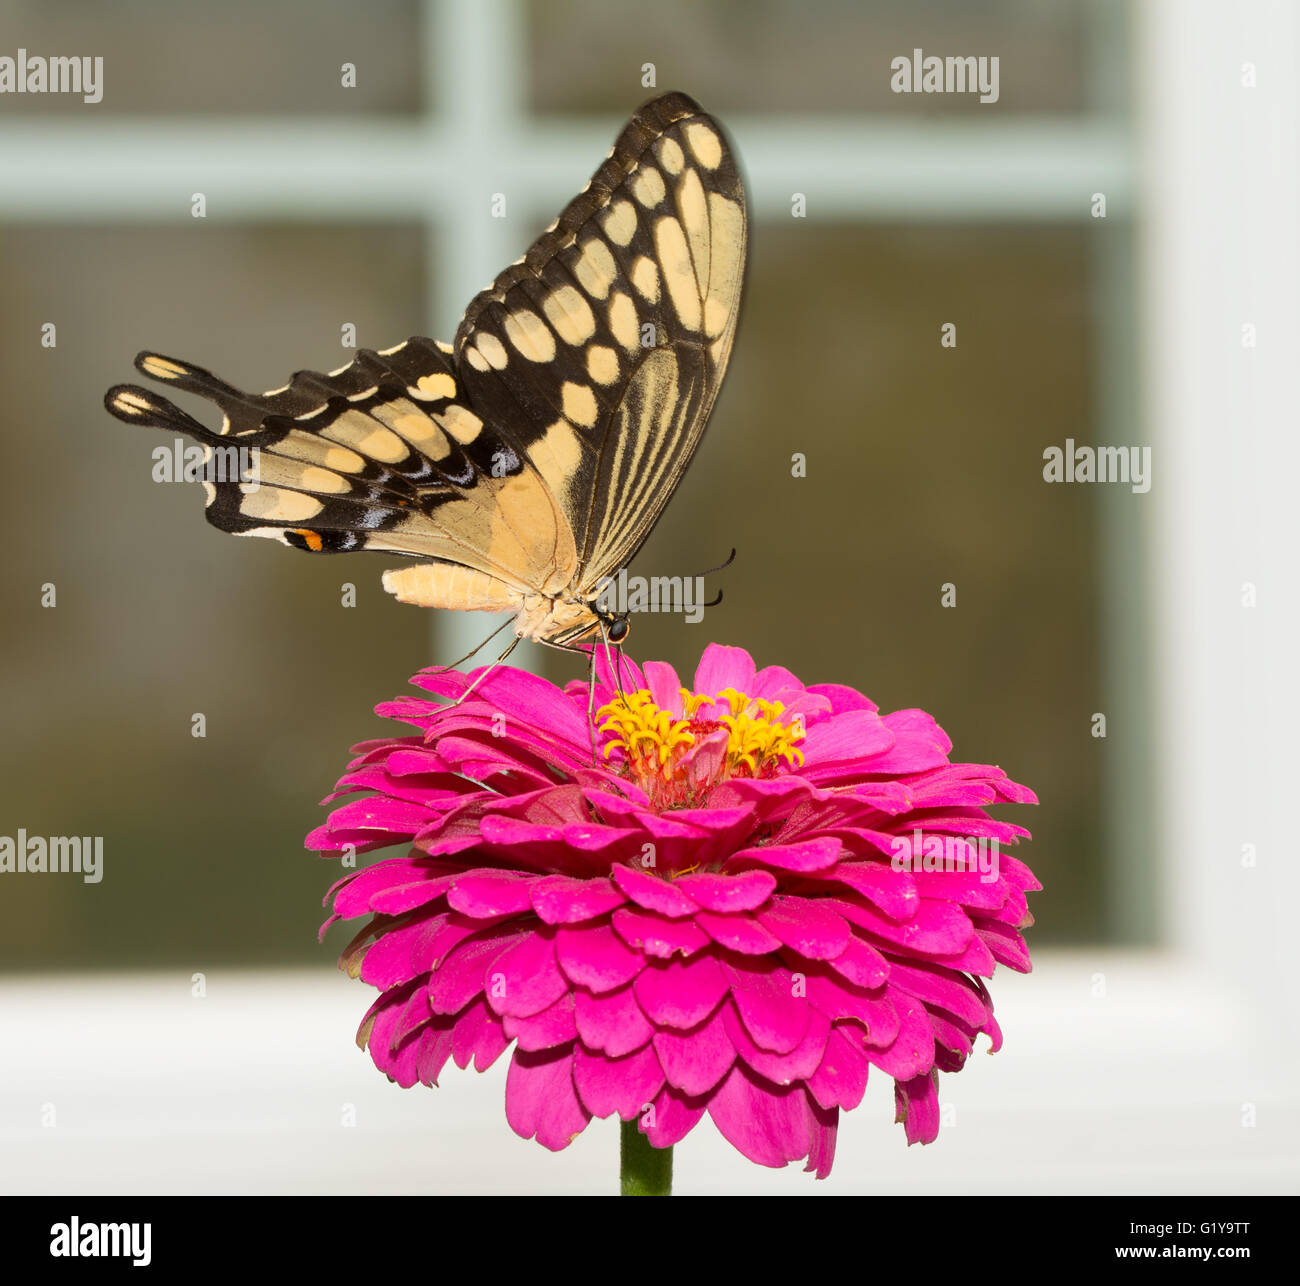 Riesige Schwalbenschwanz Schmetterling auf eine rosa Blume, umrahmt von einem Fenster im Hintergrund Stockfoto